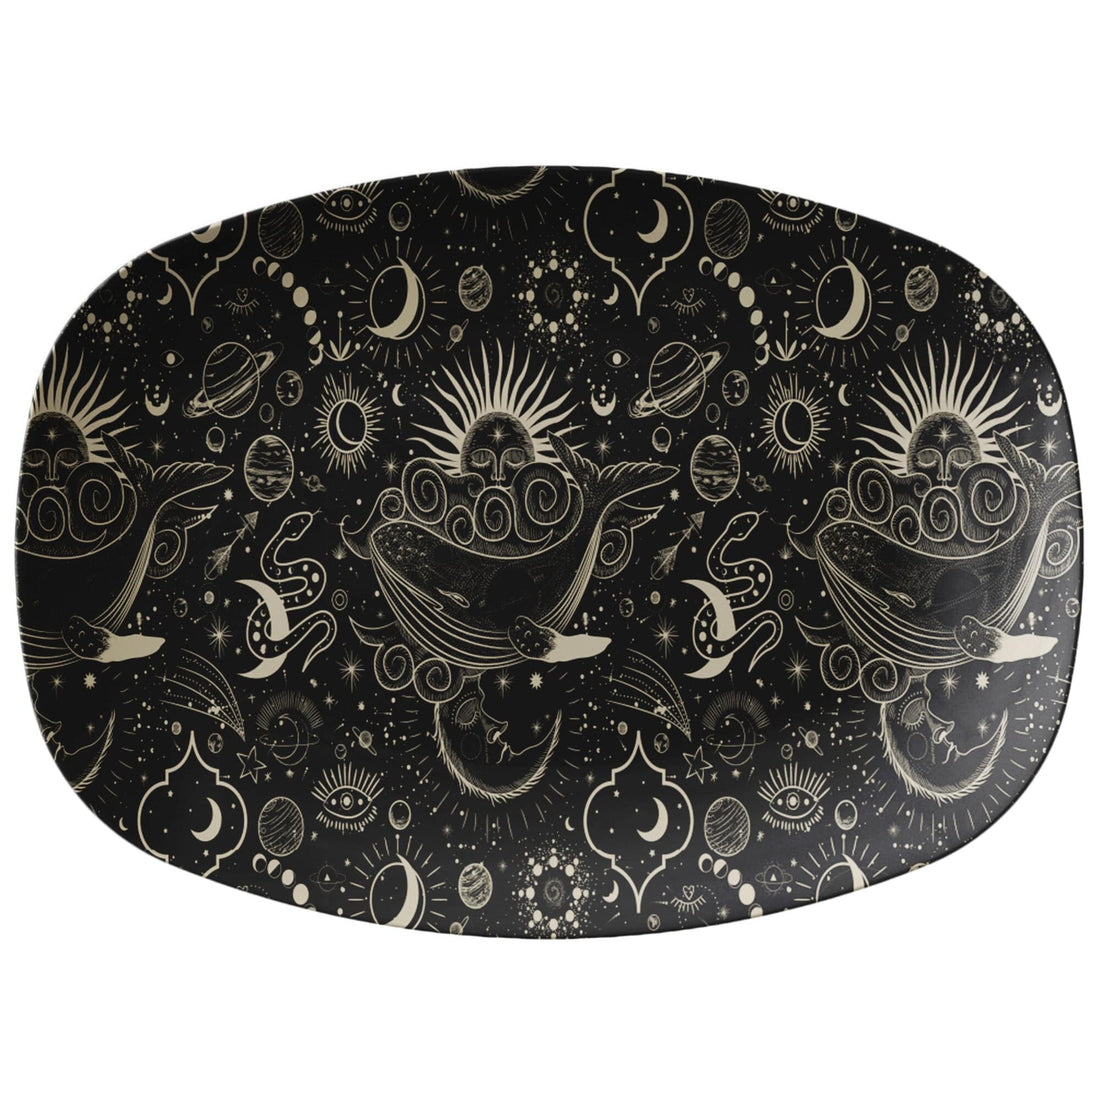 Kate McEnroe New York Vintage Celestial Moon Phases PlatterServing Platters9727